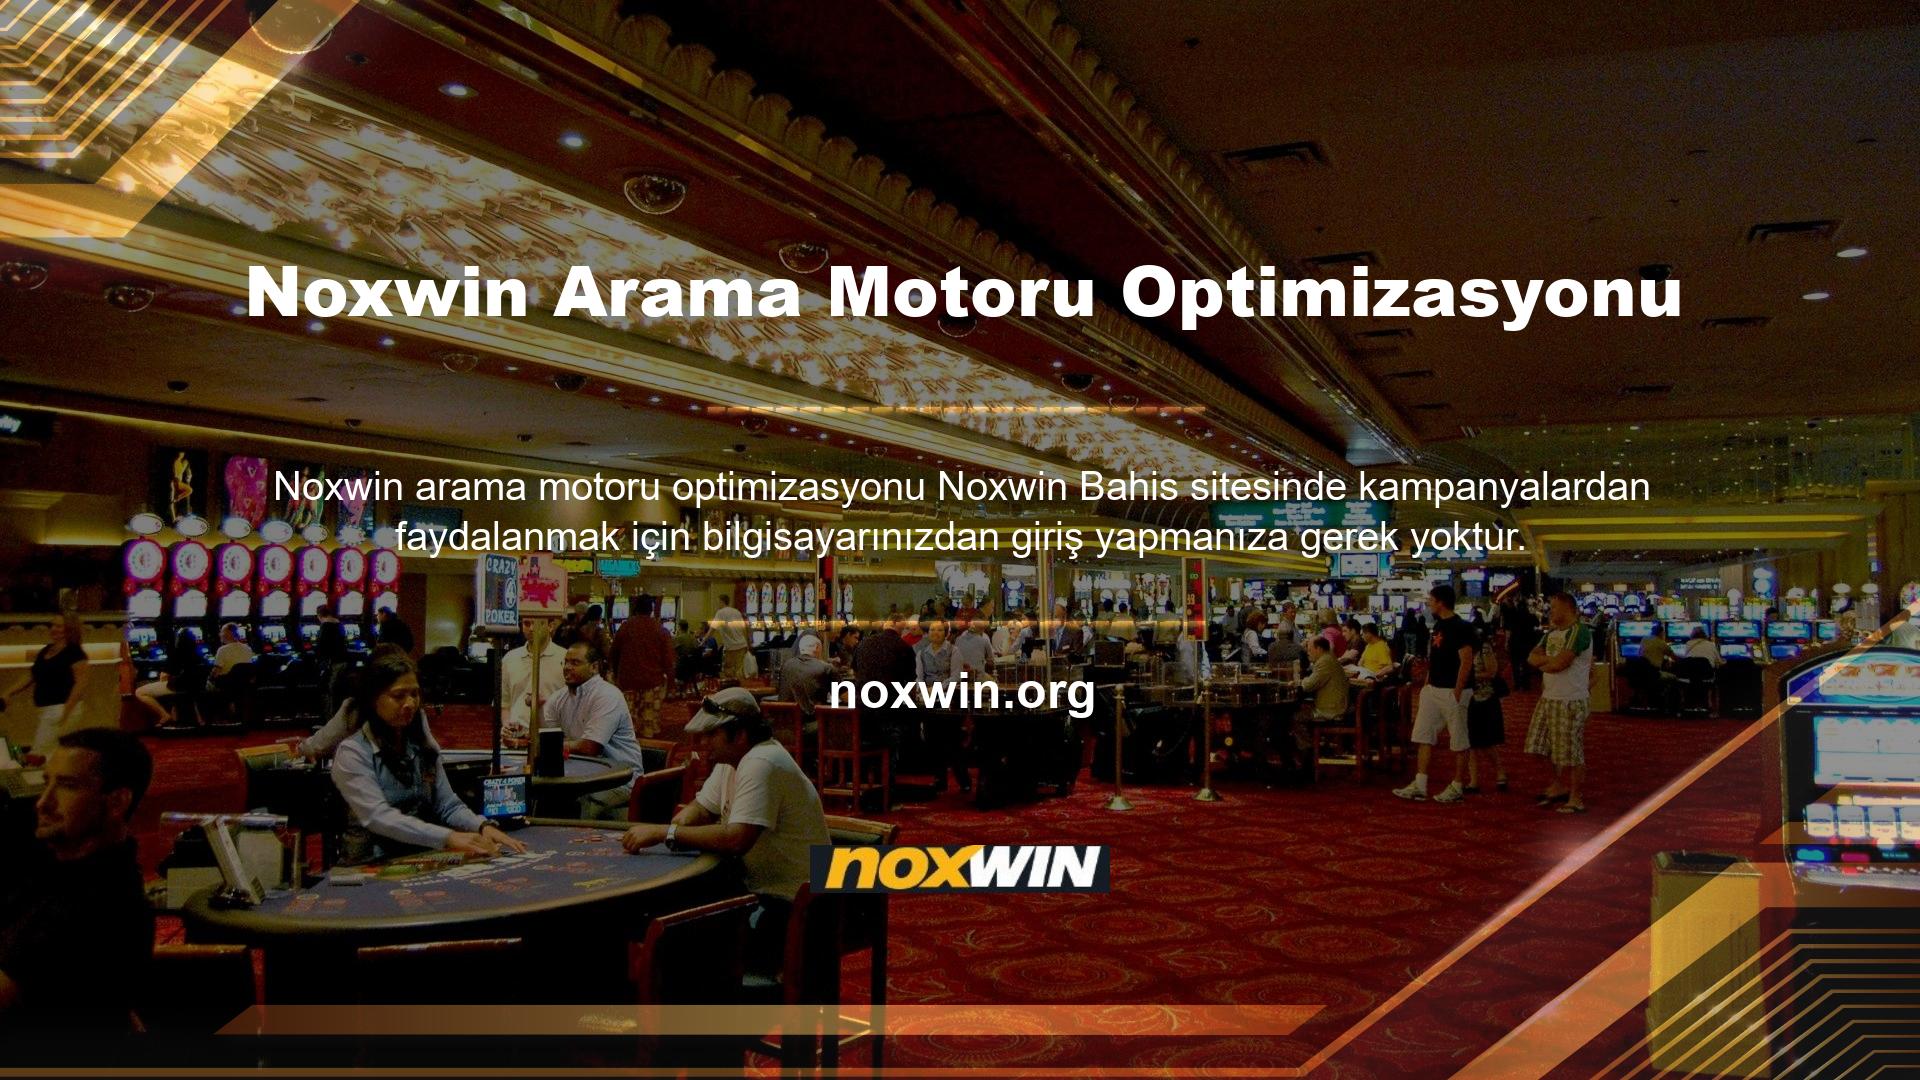 Noxwin mobil cihazınız ile siteye giriş yaparak dilediğiniz promosyonlardan yararlanabilirsiniz